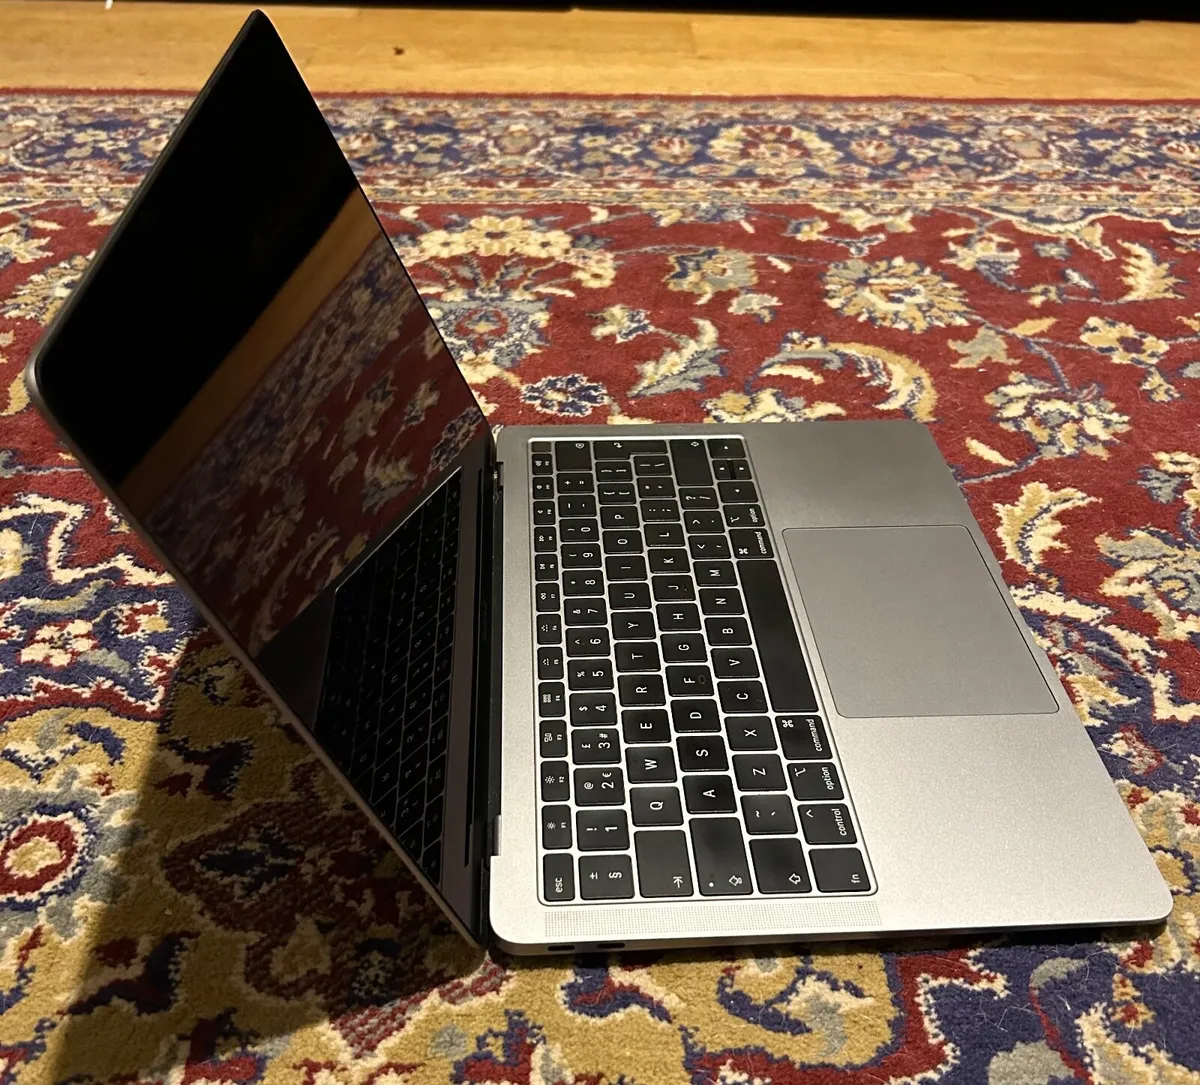 MacBook Air 2019 13” - Image 1